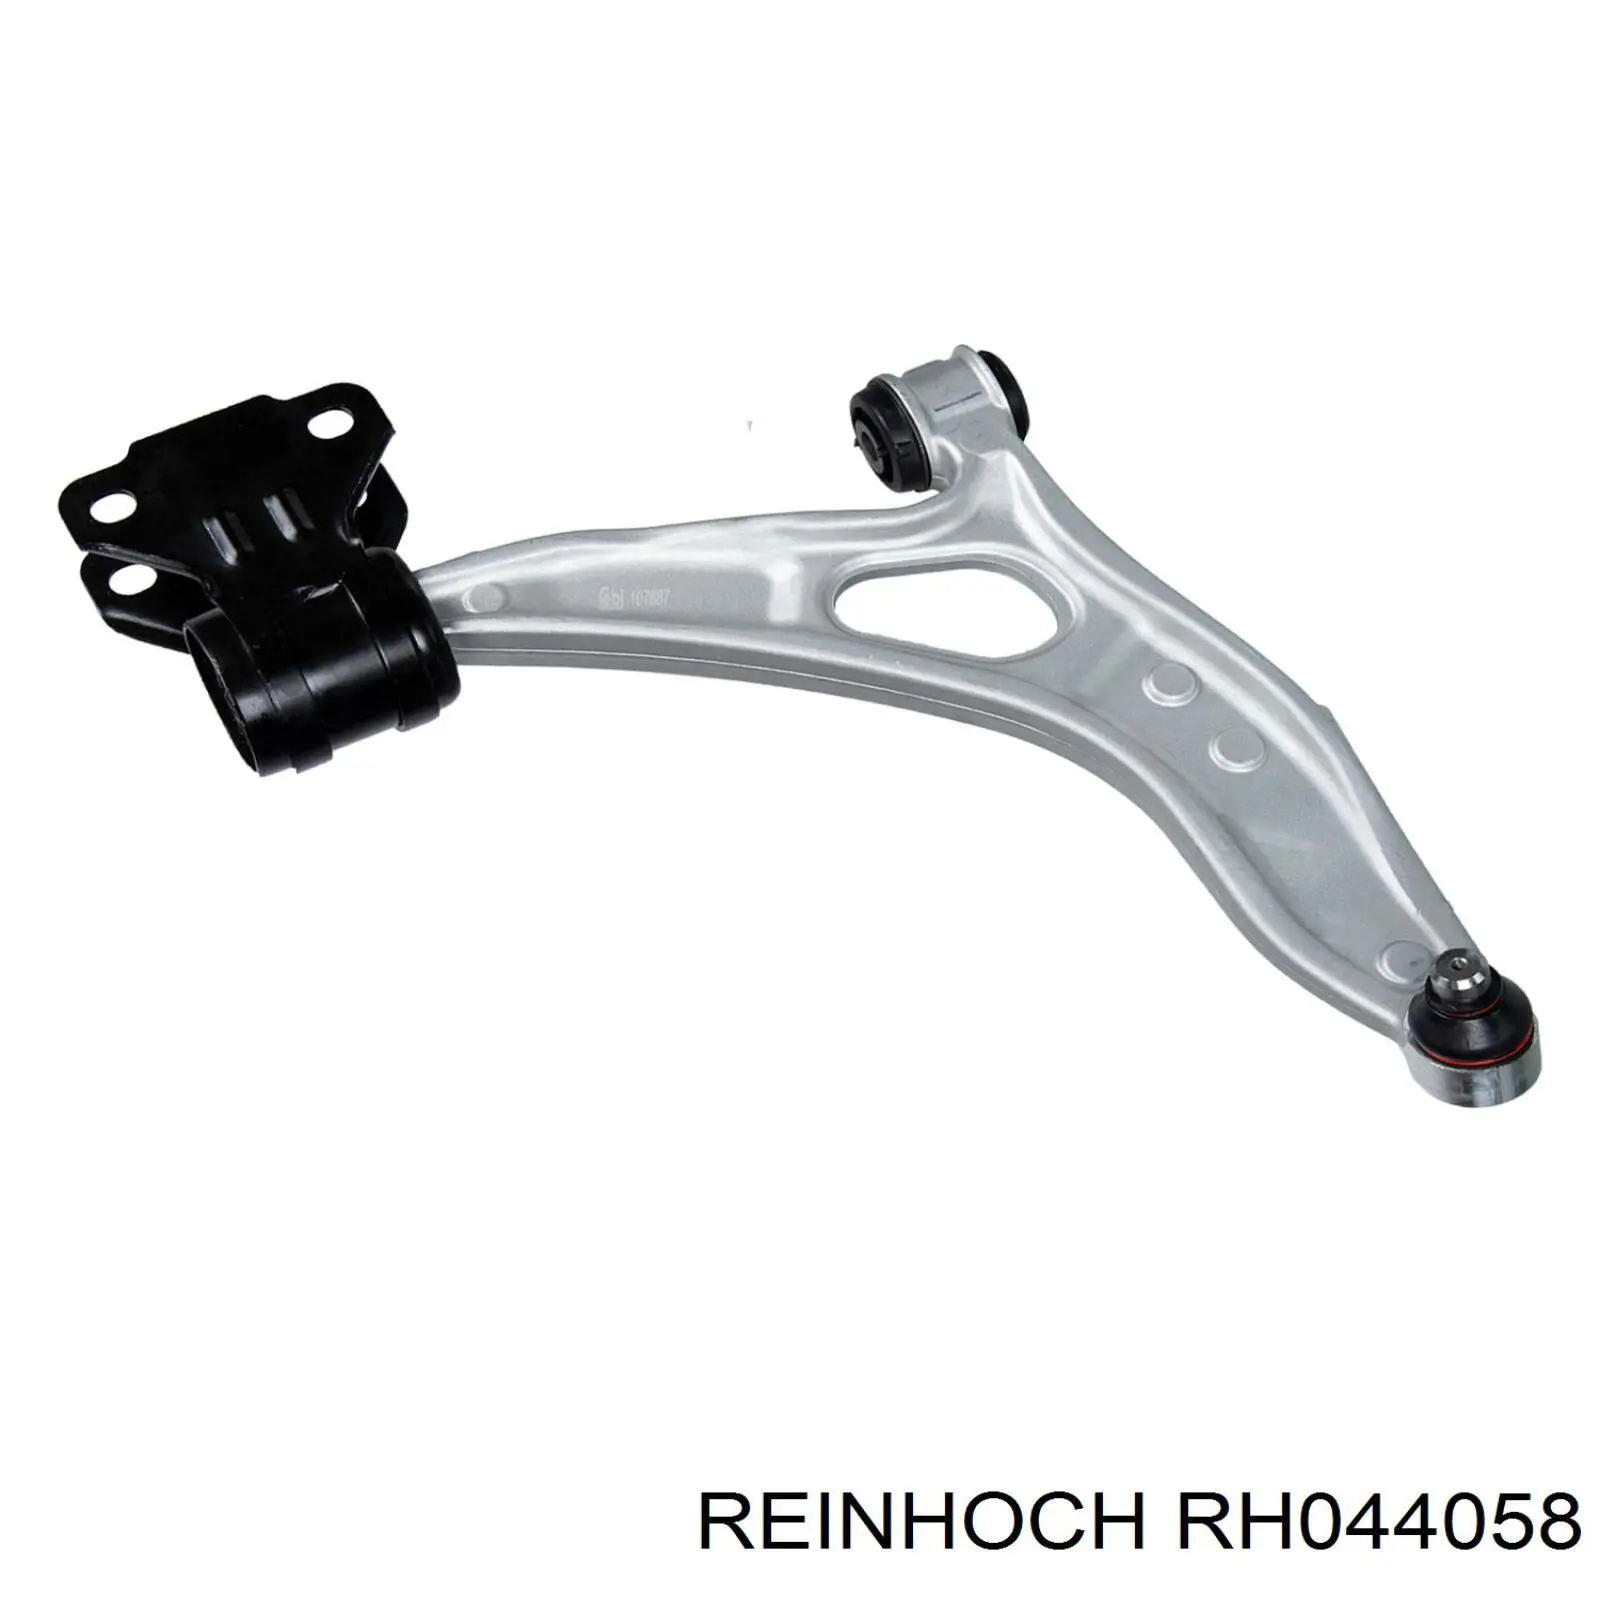 RH044058 Reinhoch barra oscilante, suspensión de ruedas delantera, inferior derecha